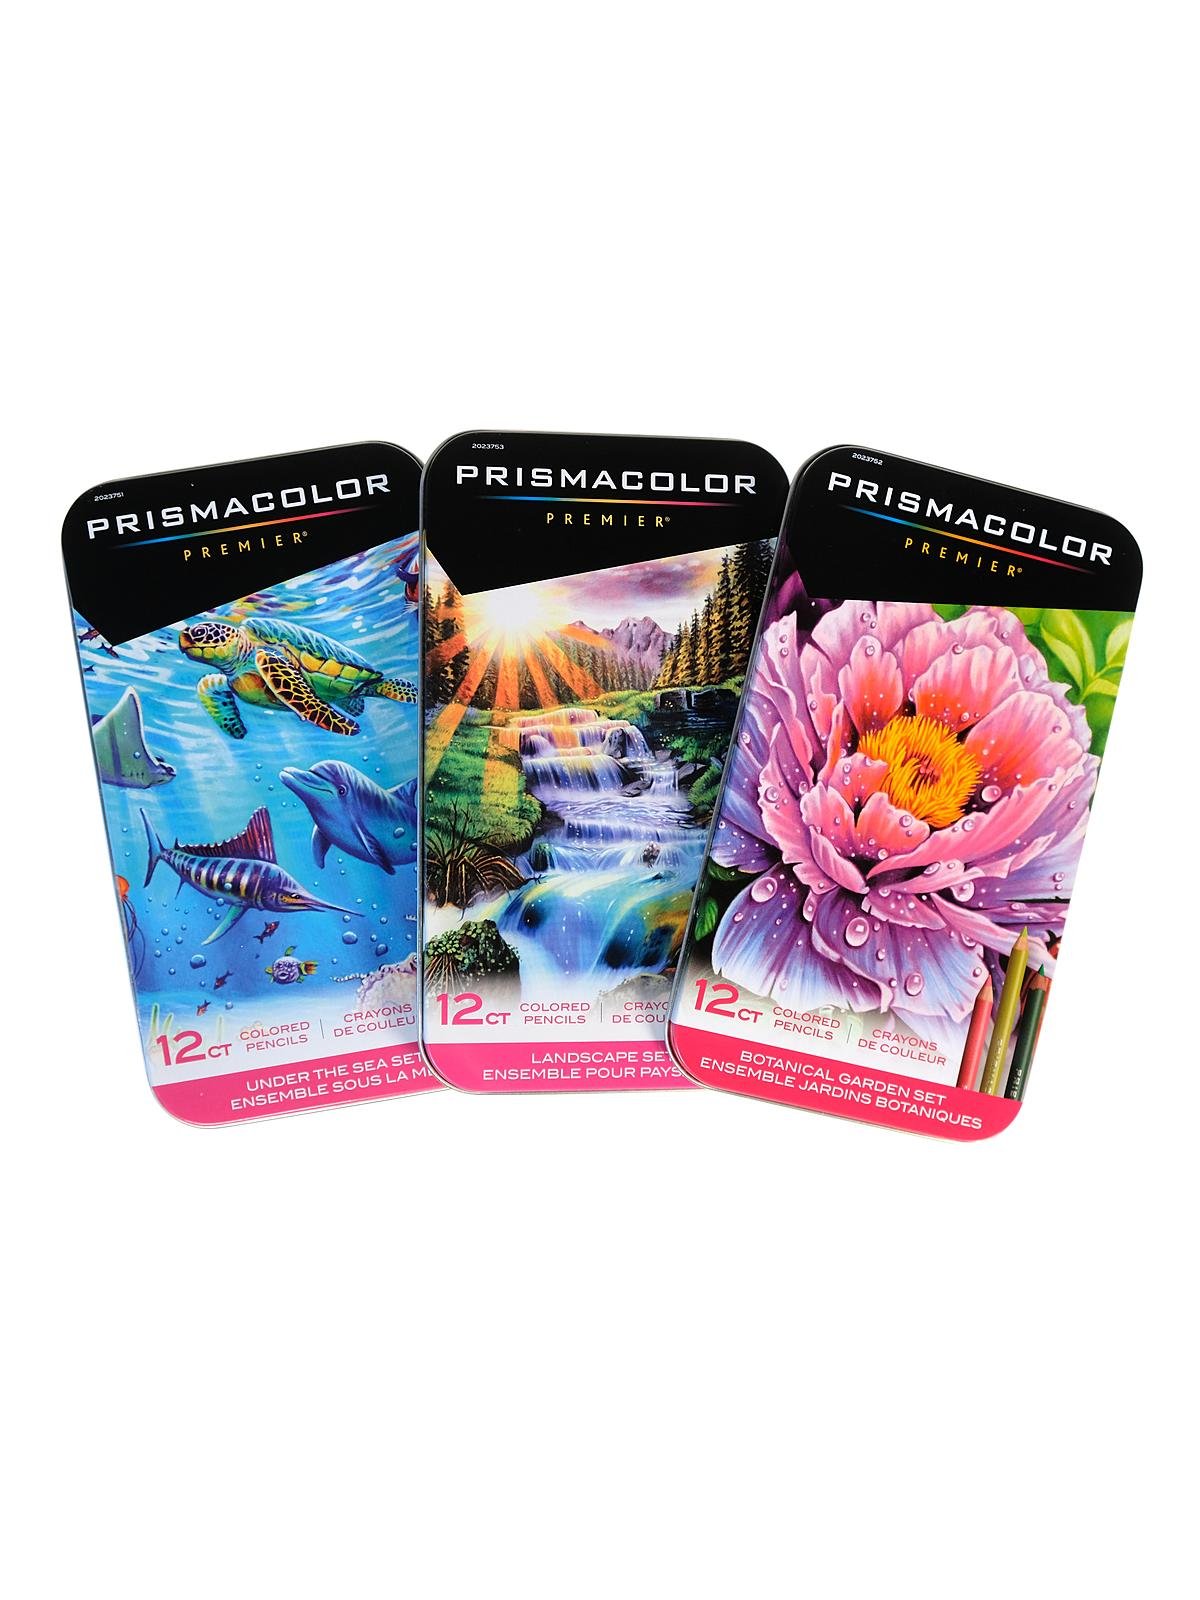 Prismacolor Premier Colored Pencils and Sets